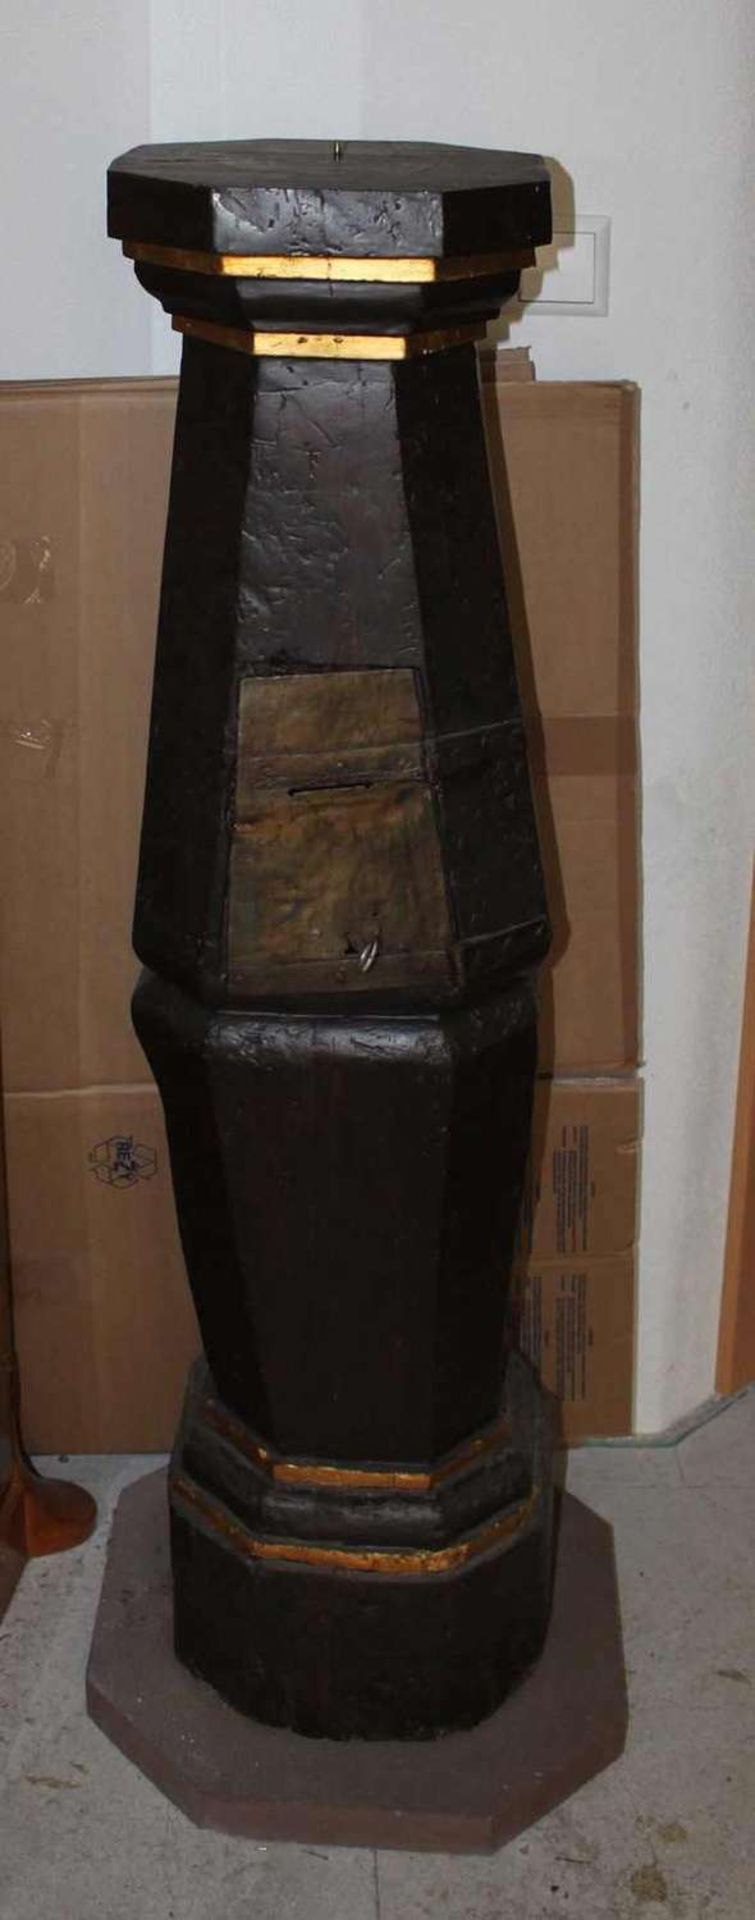 Opferstock, Original um 1850 - 1900, auf Sandsteinsockel, Höhe ca. 125 cm,. Offertory box,